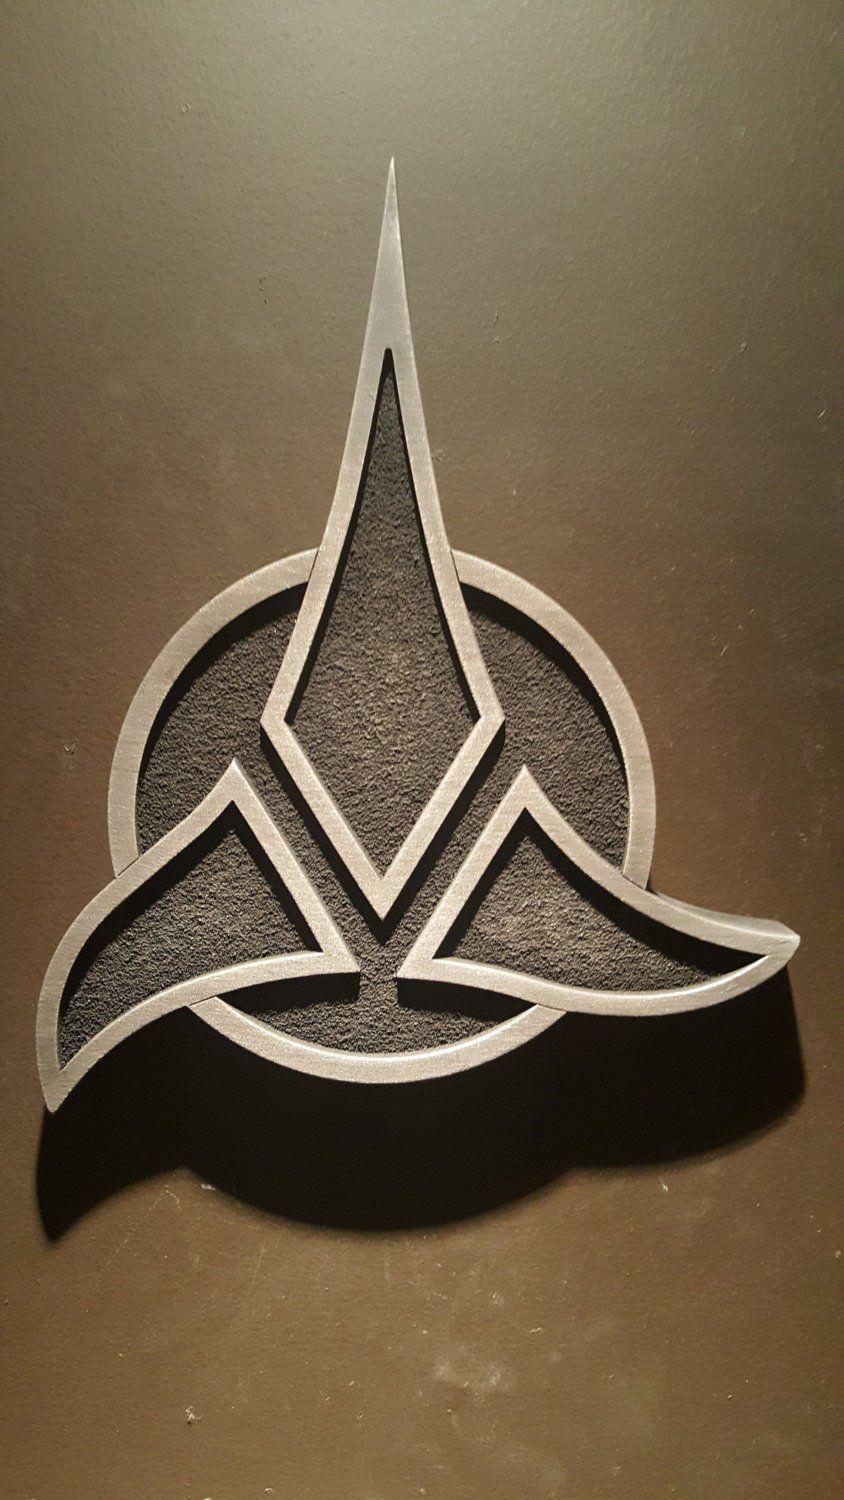 Klingon Logo - Star Trek Klingon Empire logo plaque